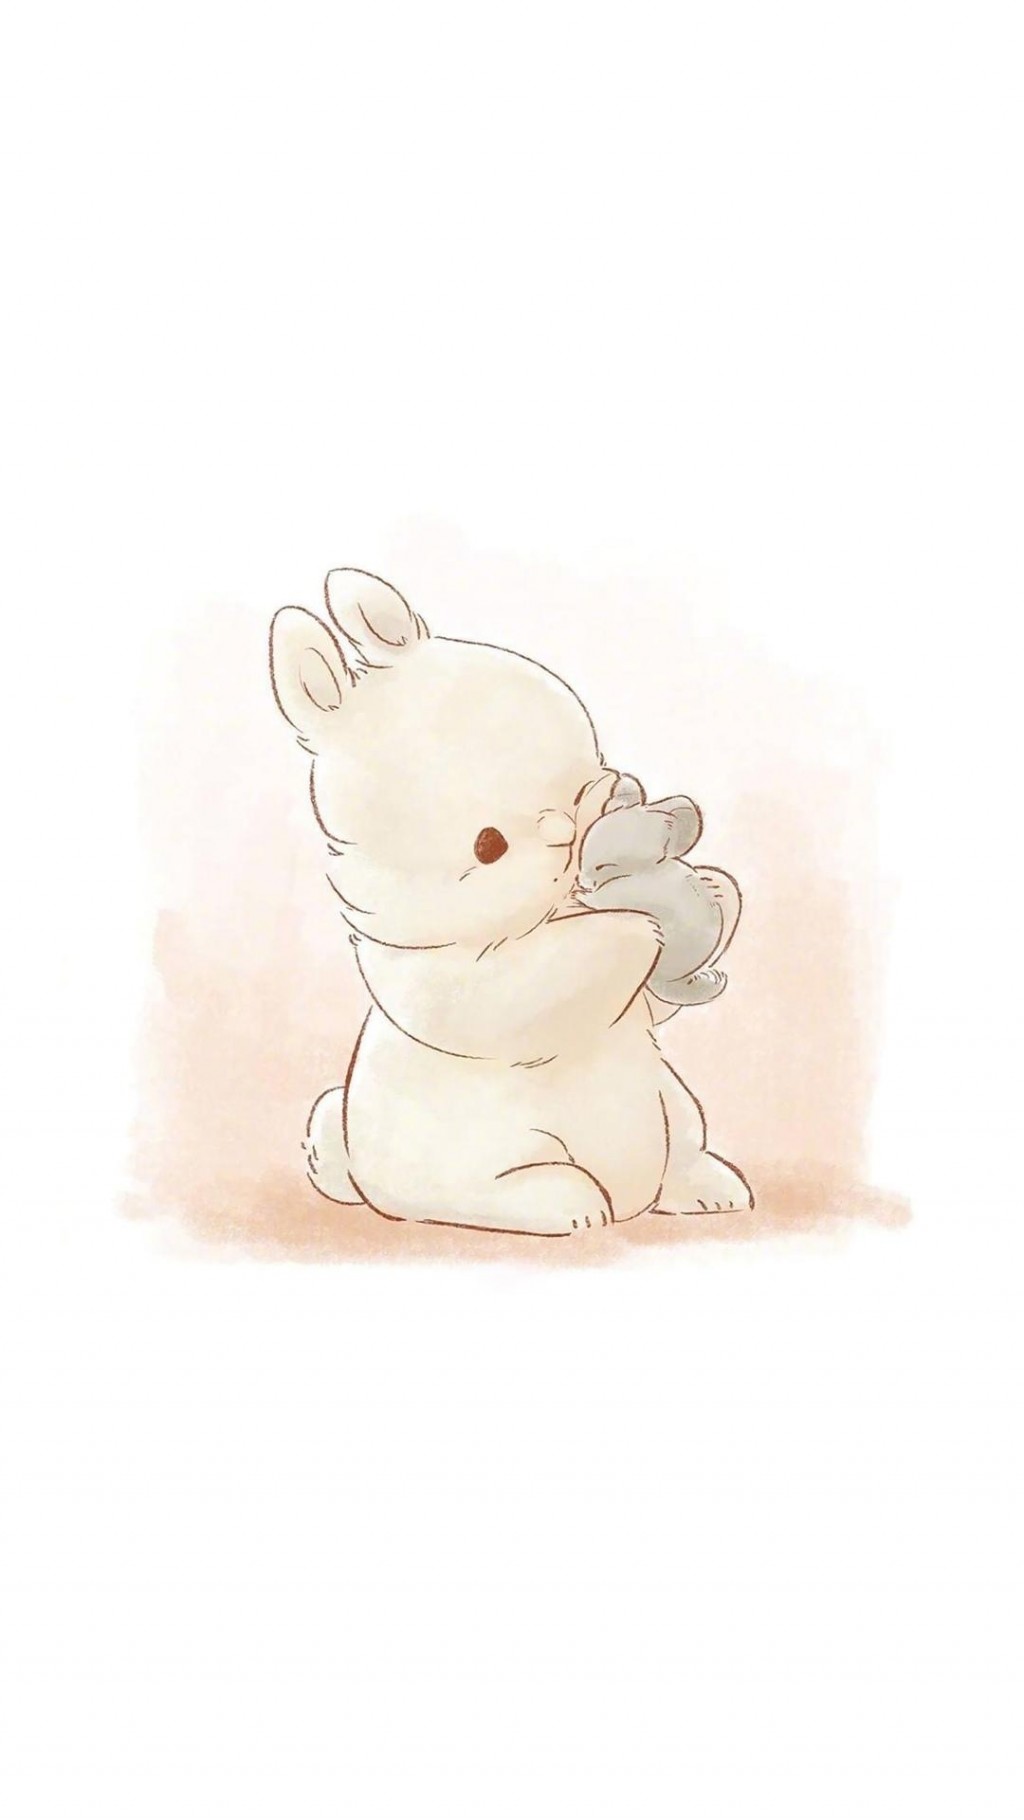 萌萌哒小兔子可爱卡通手绘插画